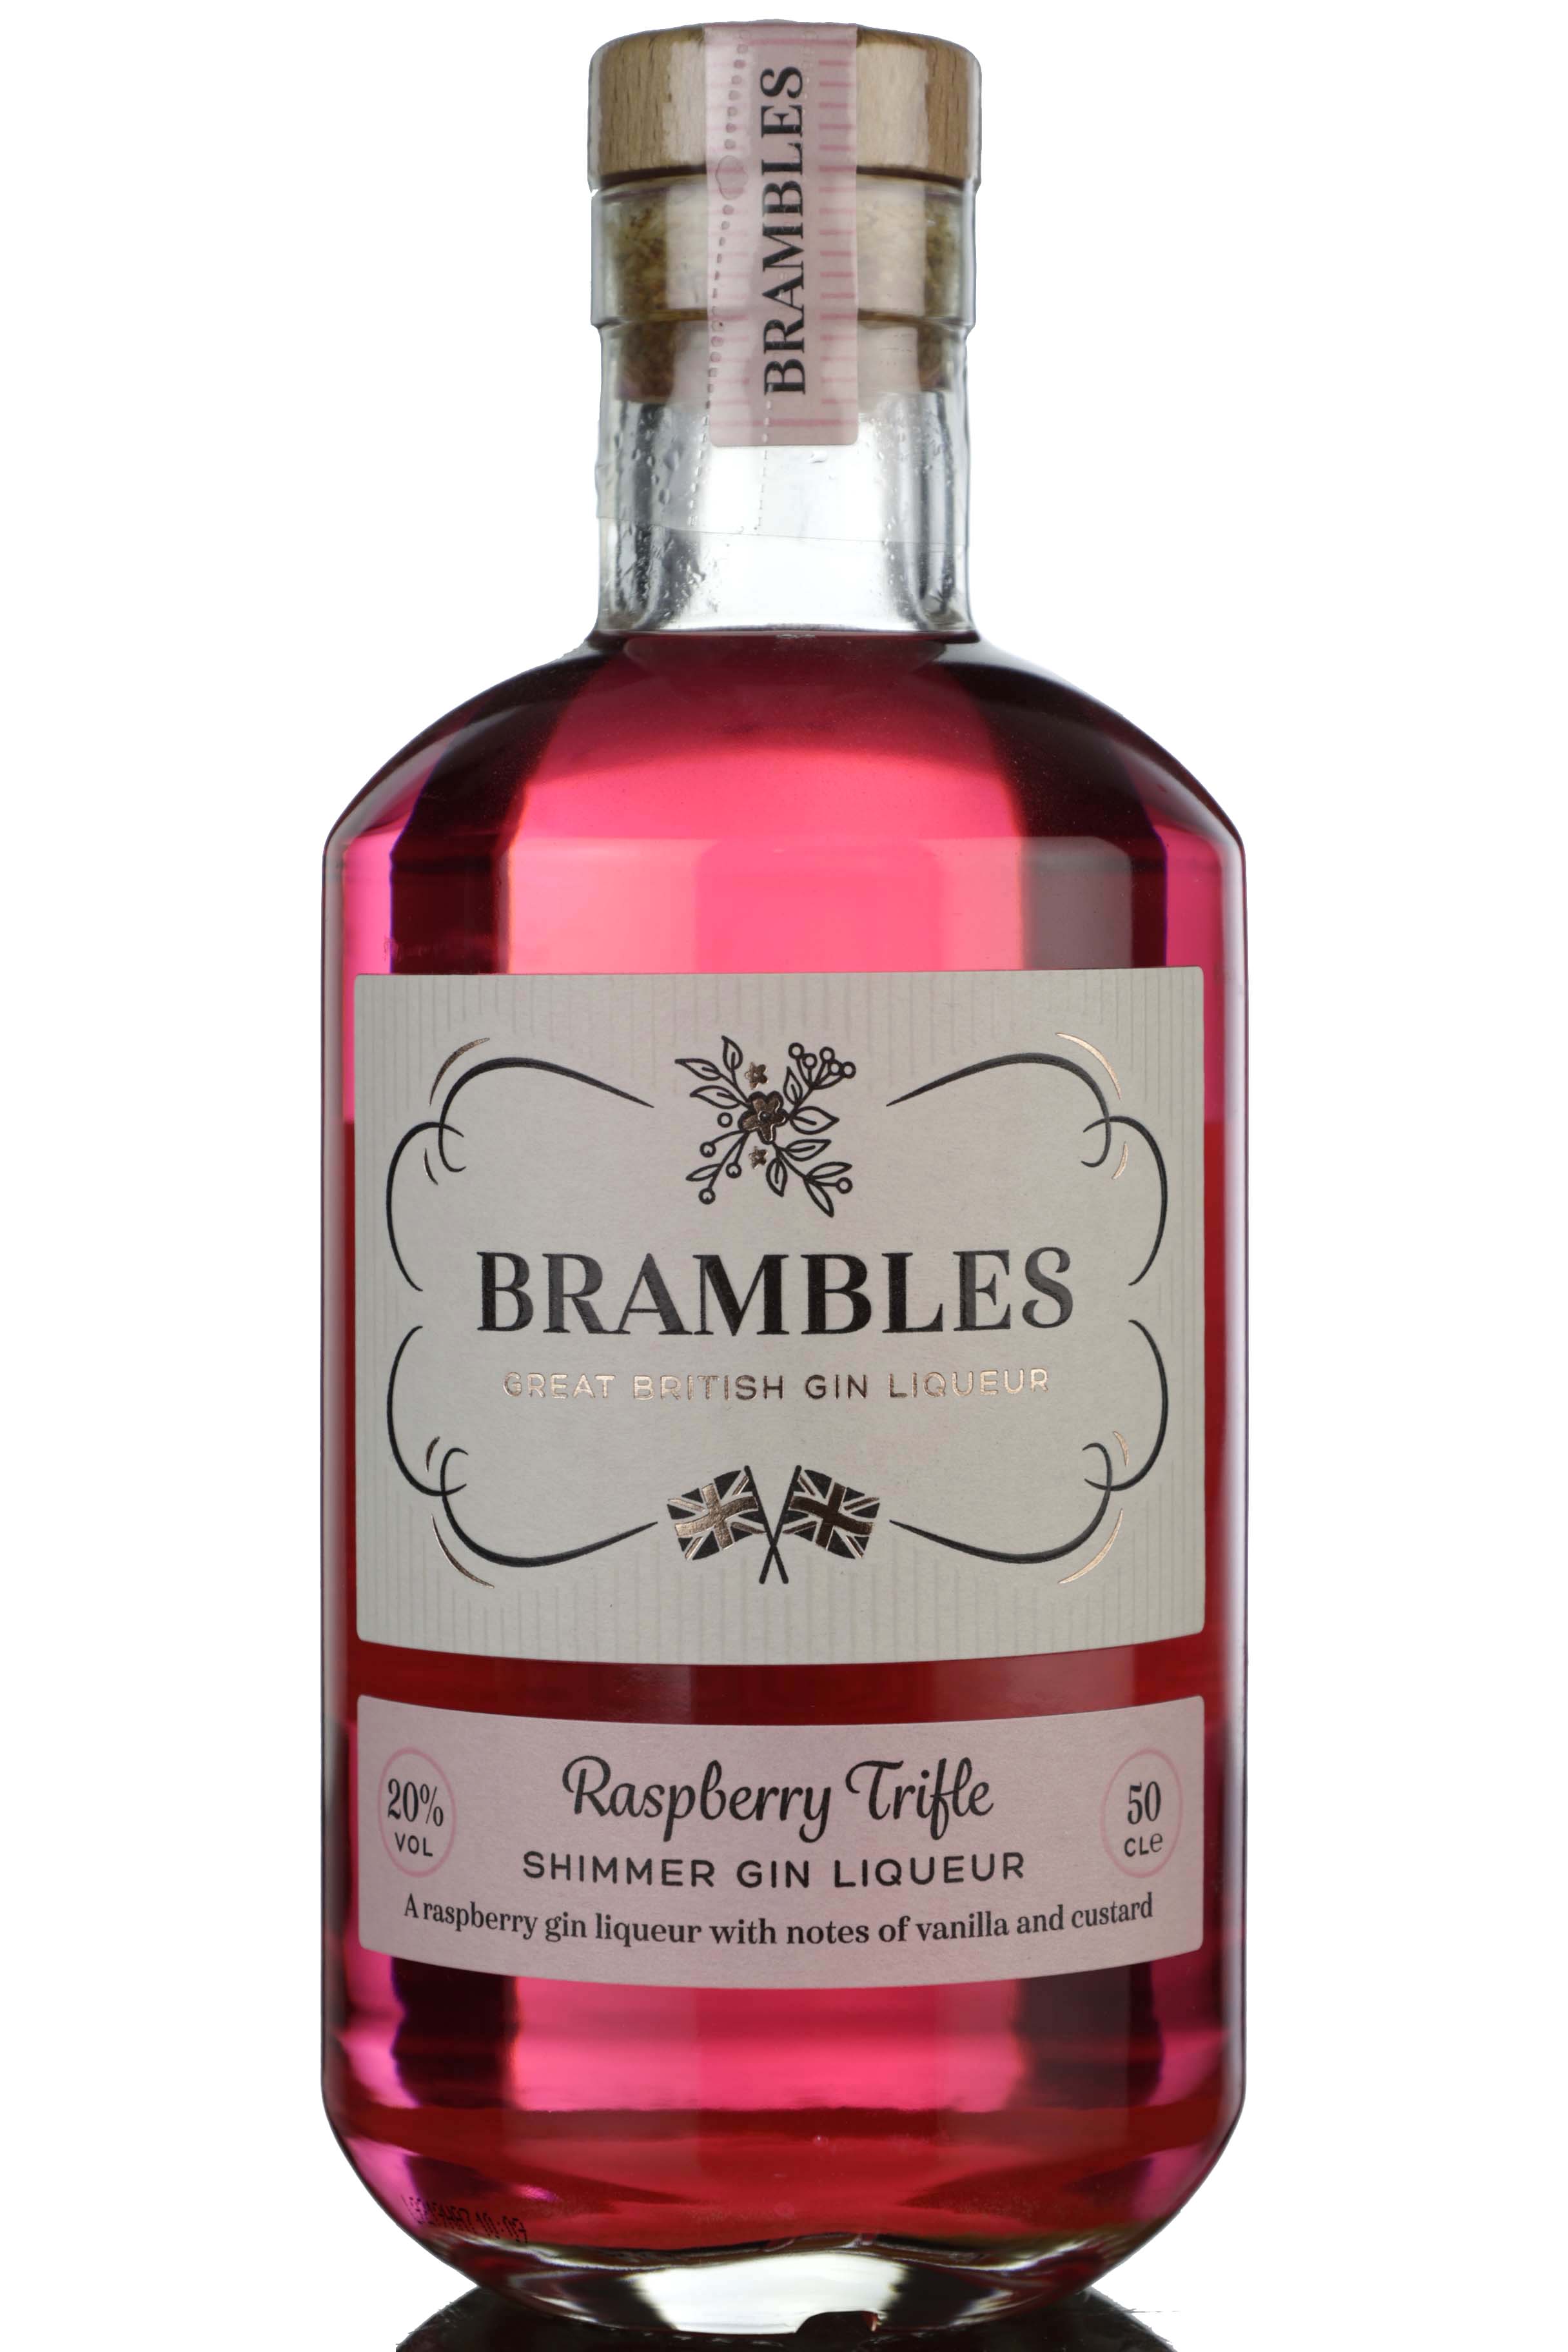 Brambles Raspberry Trifle Gin Liqueur